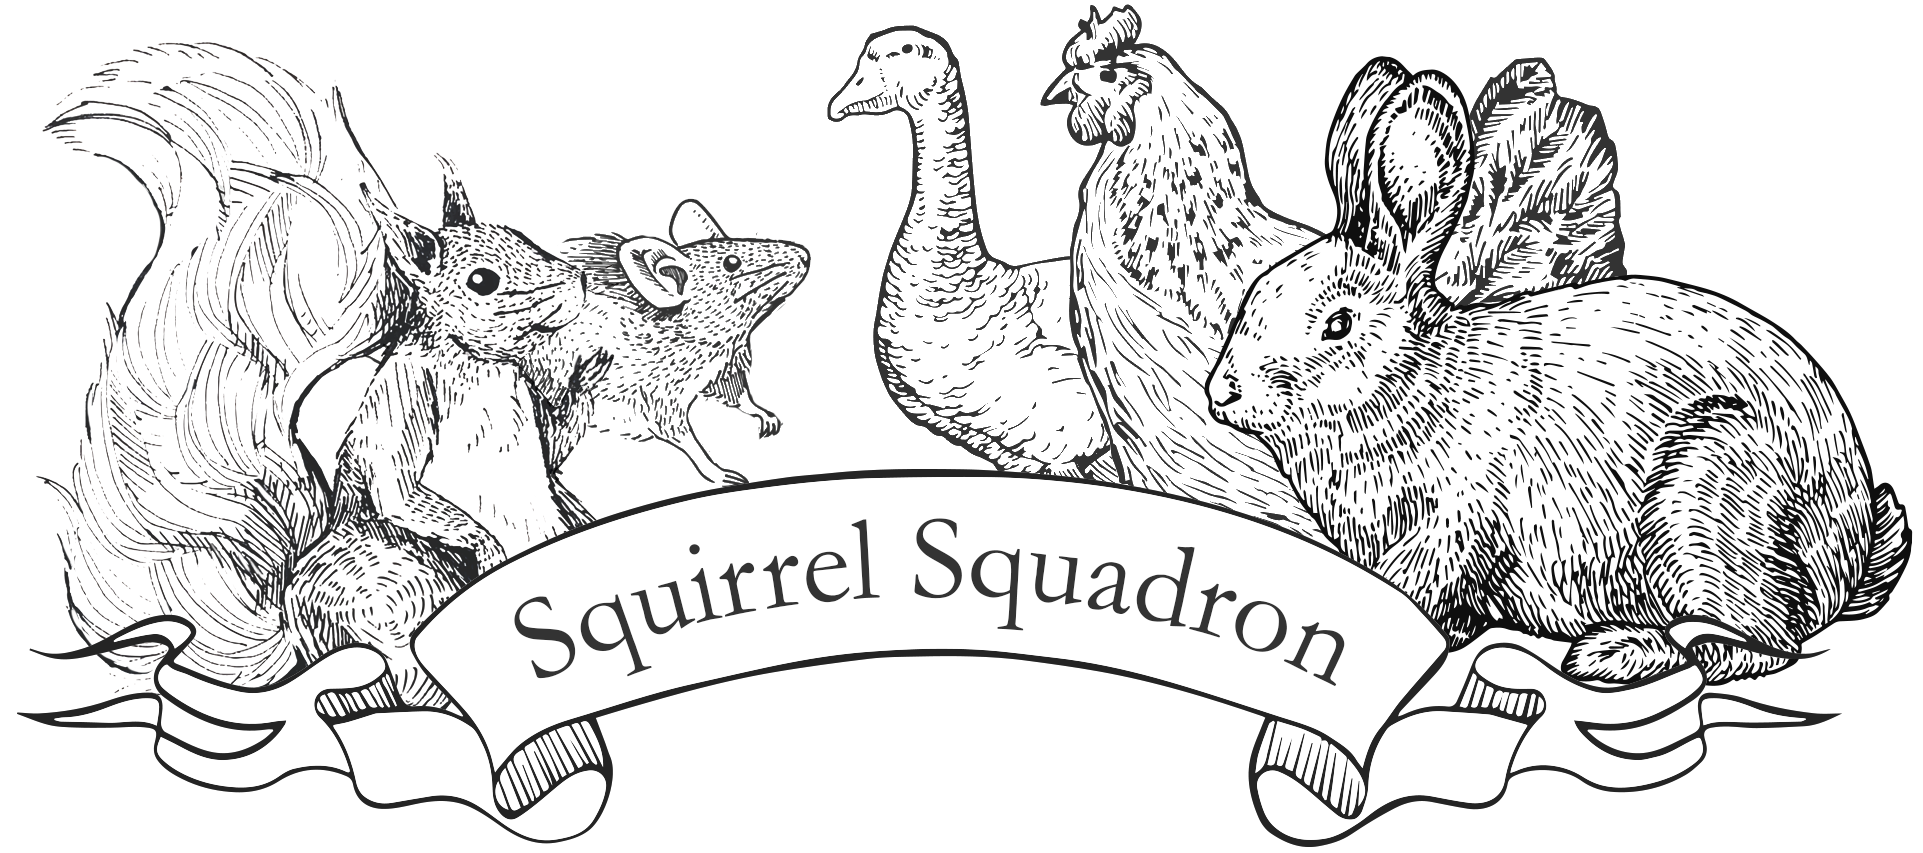 squirrel squadron